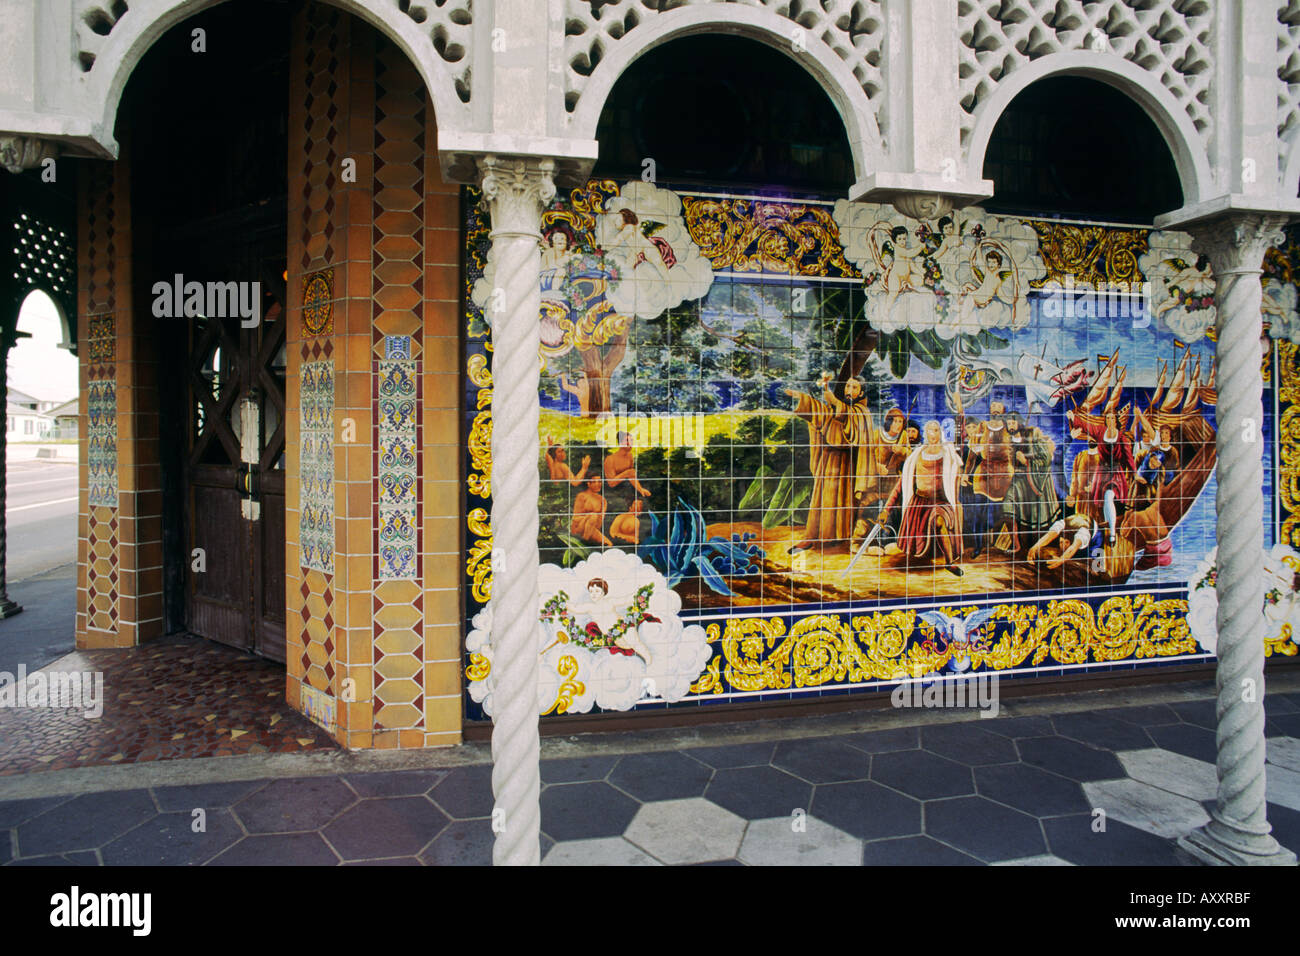 Célèbre mosaïque murale tuile originale photos ornent les Columbia Restaurant dans le quartier cubain d'Ybor City, Tampa, Florida, USA Banque D'Images